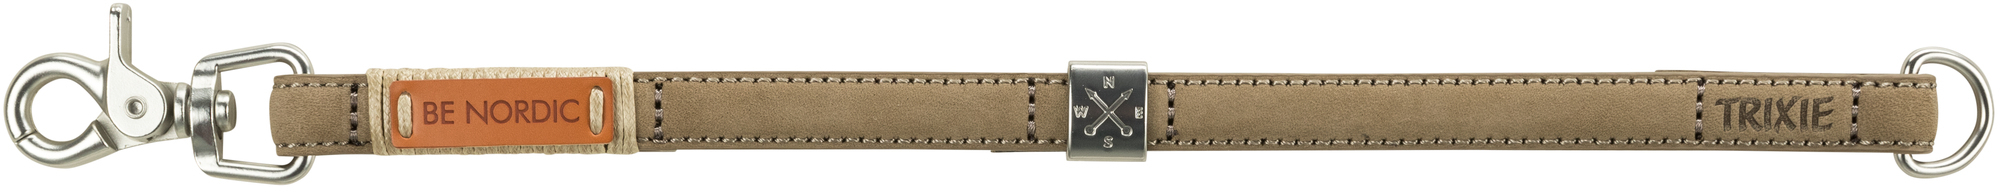 Trixie Be Nordic collar de cuero color arena - varias tallas disponibles